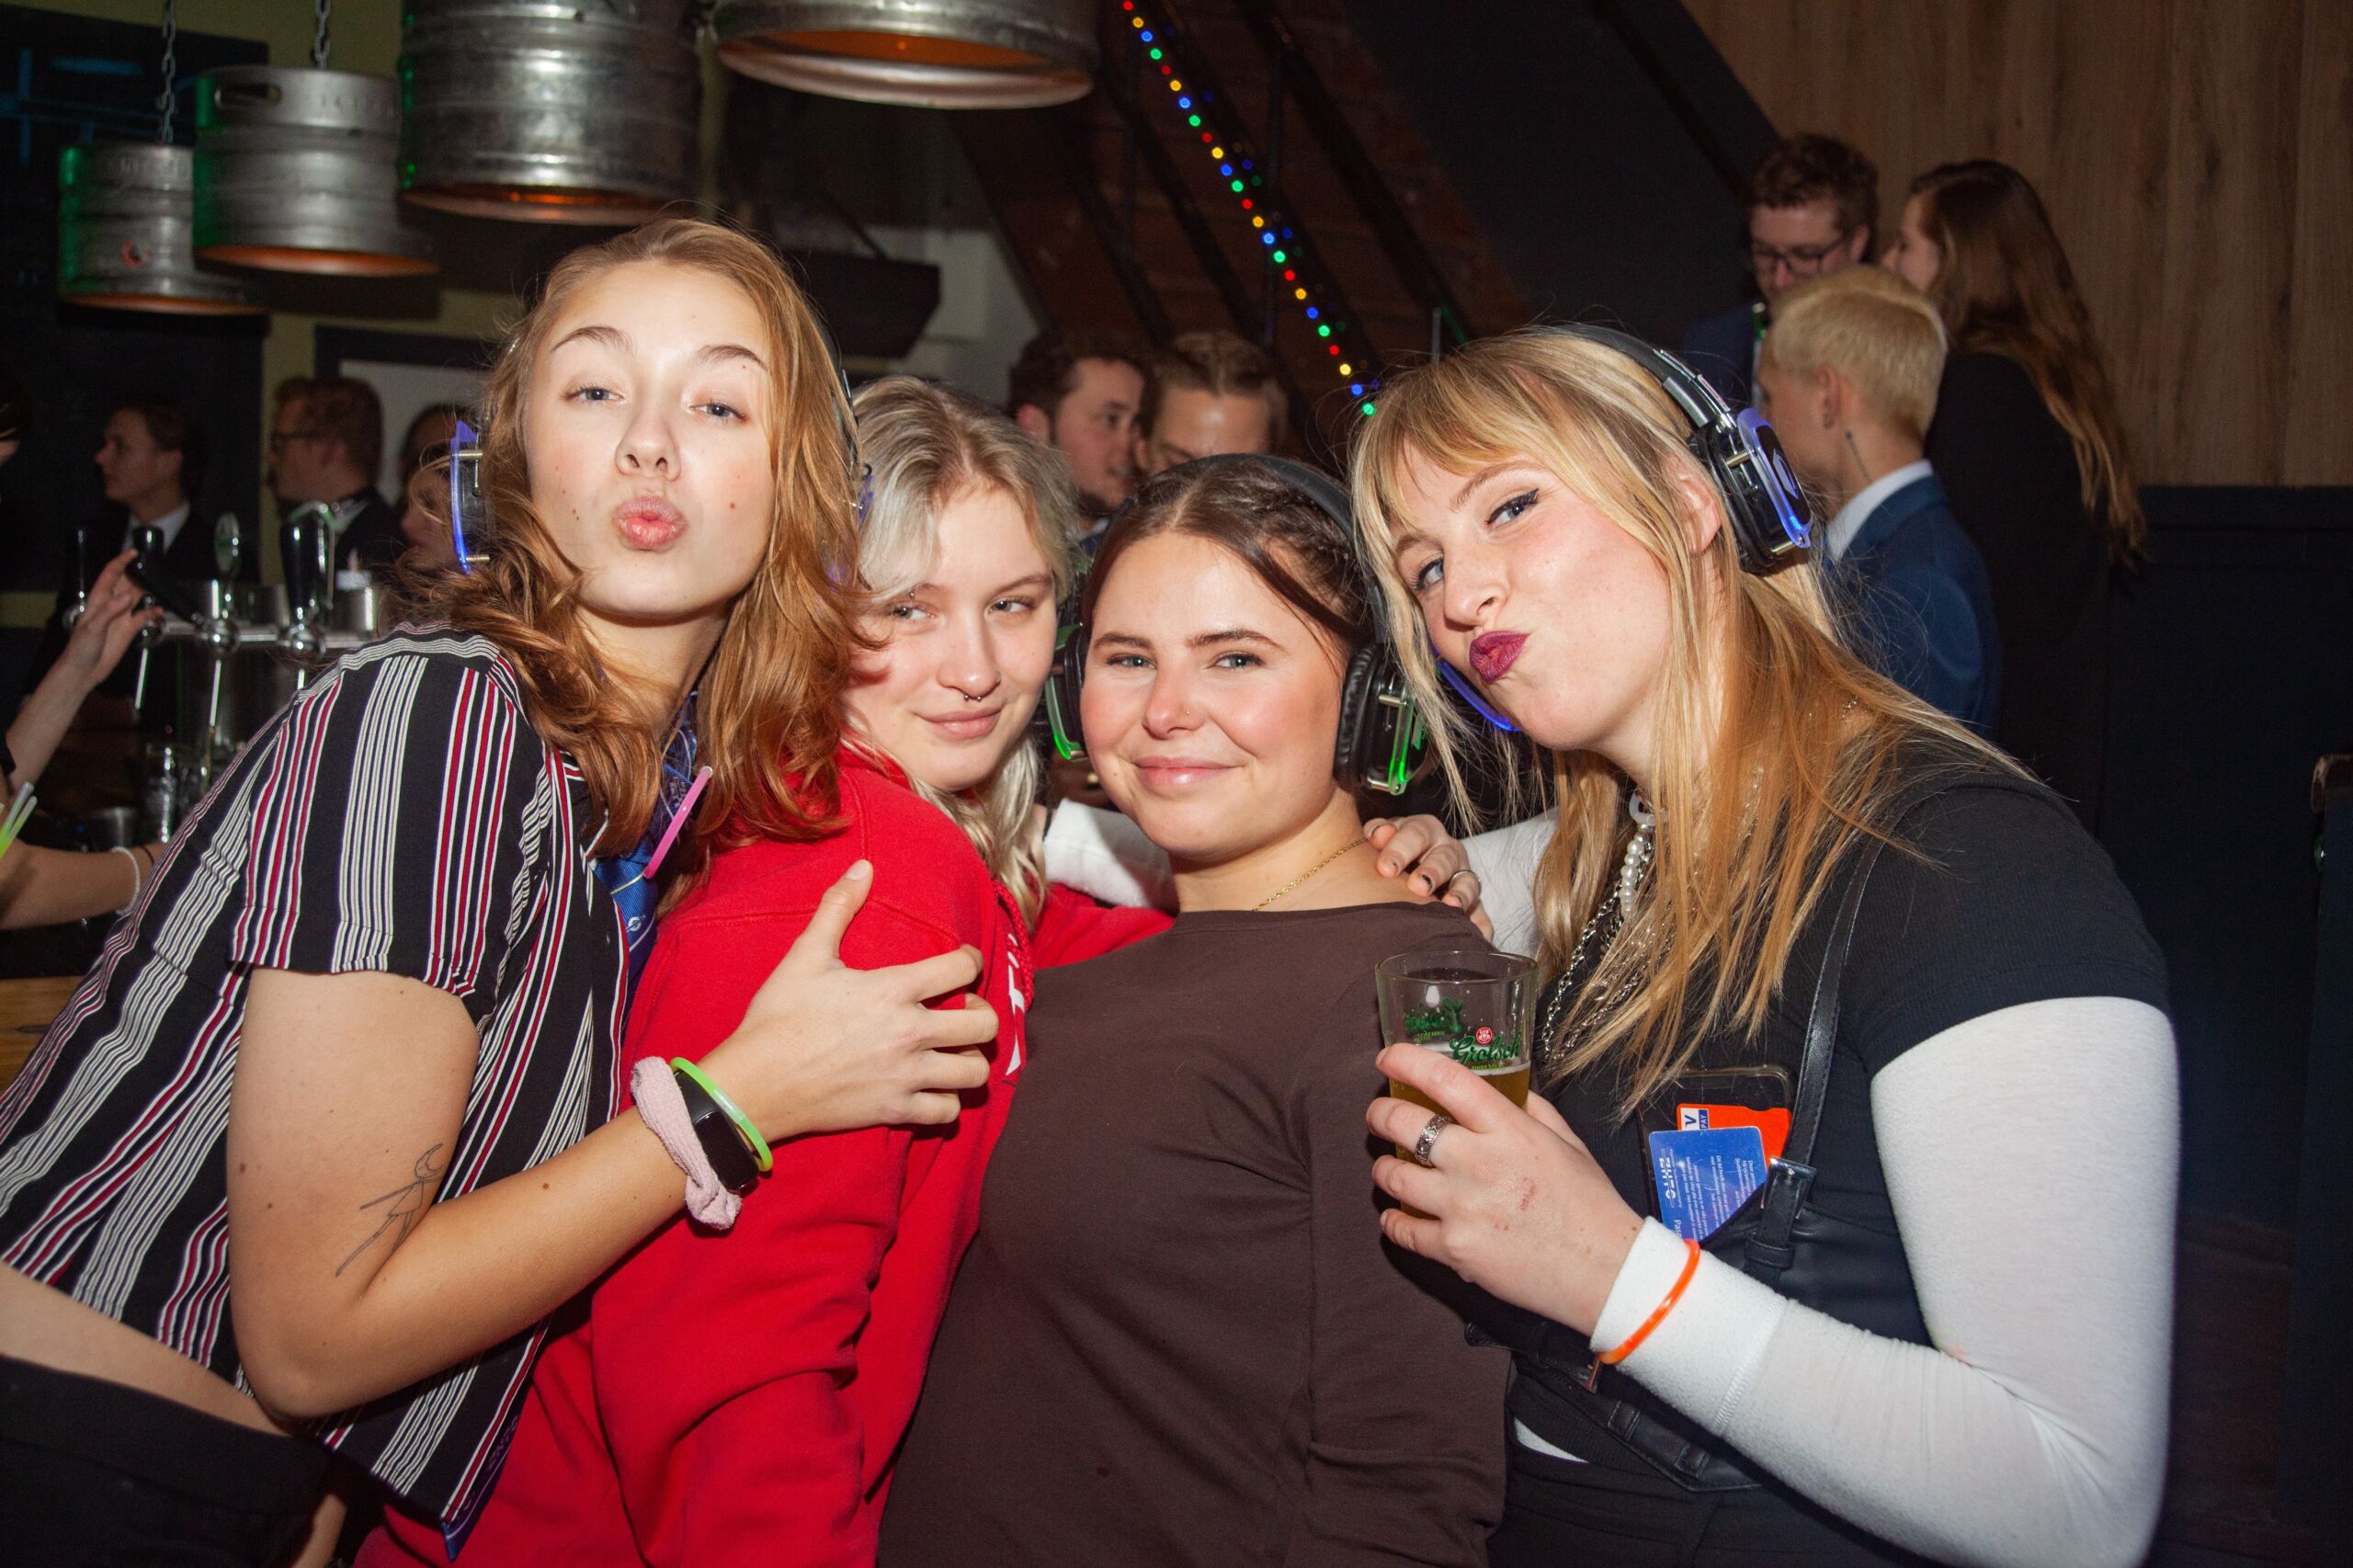 Vier vrouwlijke studenten knuffelen en poseren voor een foto op een feestje. Een van hen tuit speels haar lippen, terwijl de anderen glimlachen en drankjes vasthouden. De setting bestaat uit feestverlichting en biervaten op de achtergrond, wat een levendige sfeer creëert.